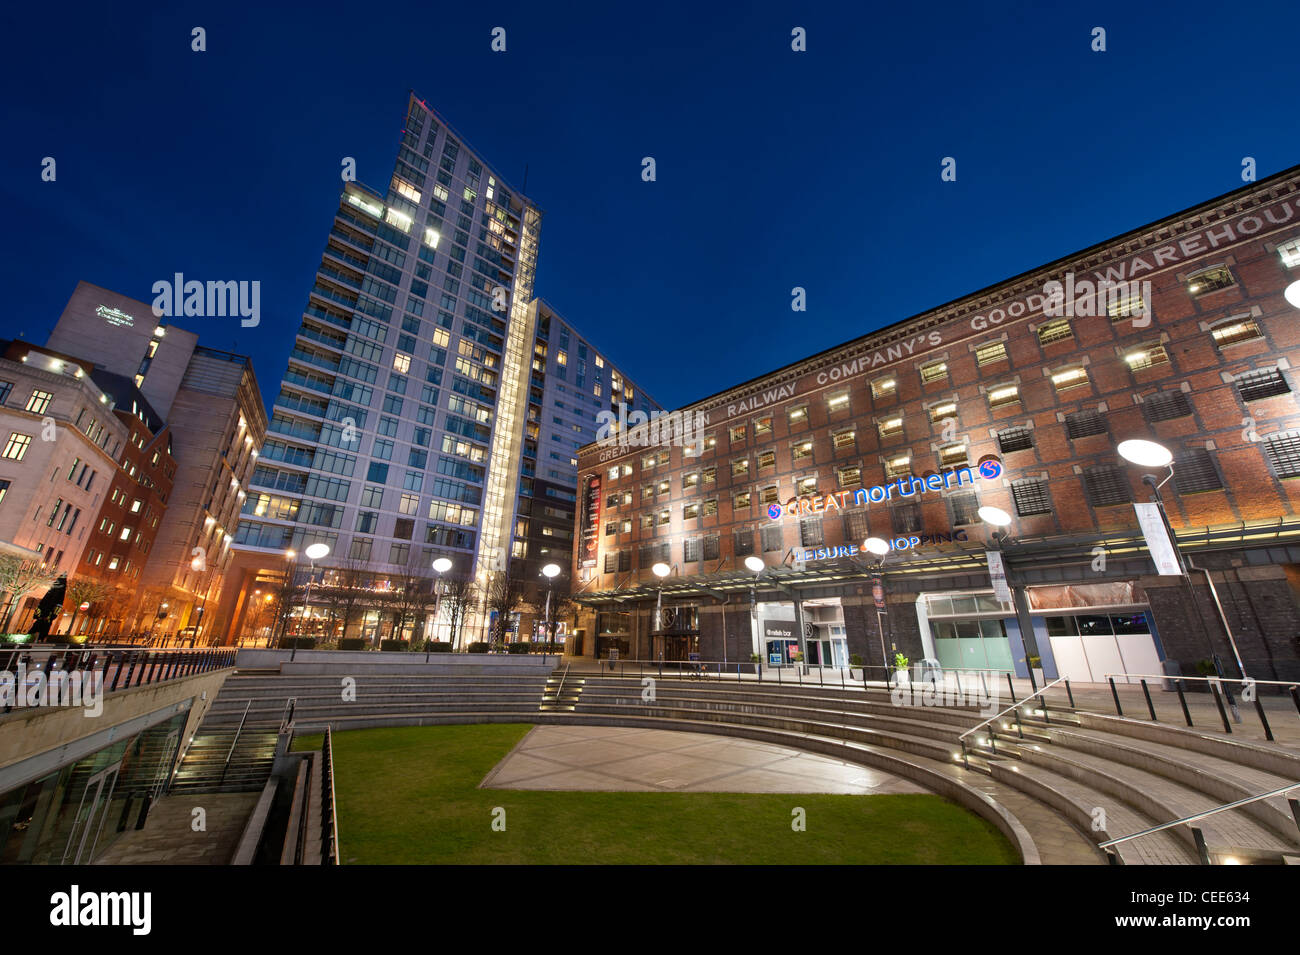 Le Grand Nord de l'entrepôt sur Peter Street et dans Deansgate Manchester, UK, tourné pendant la nuit. Banque D'Images